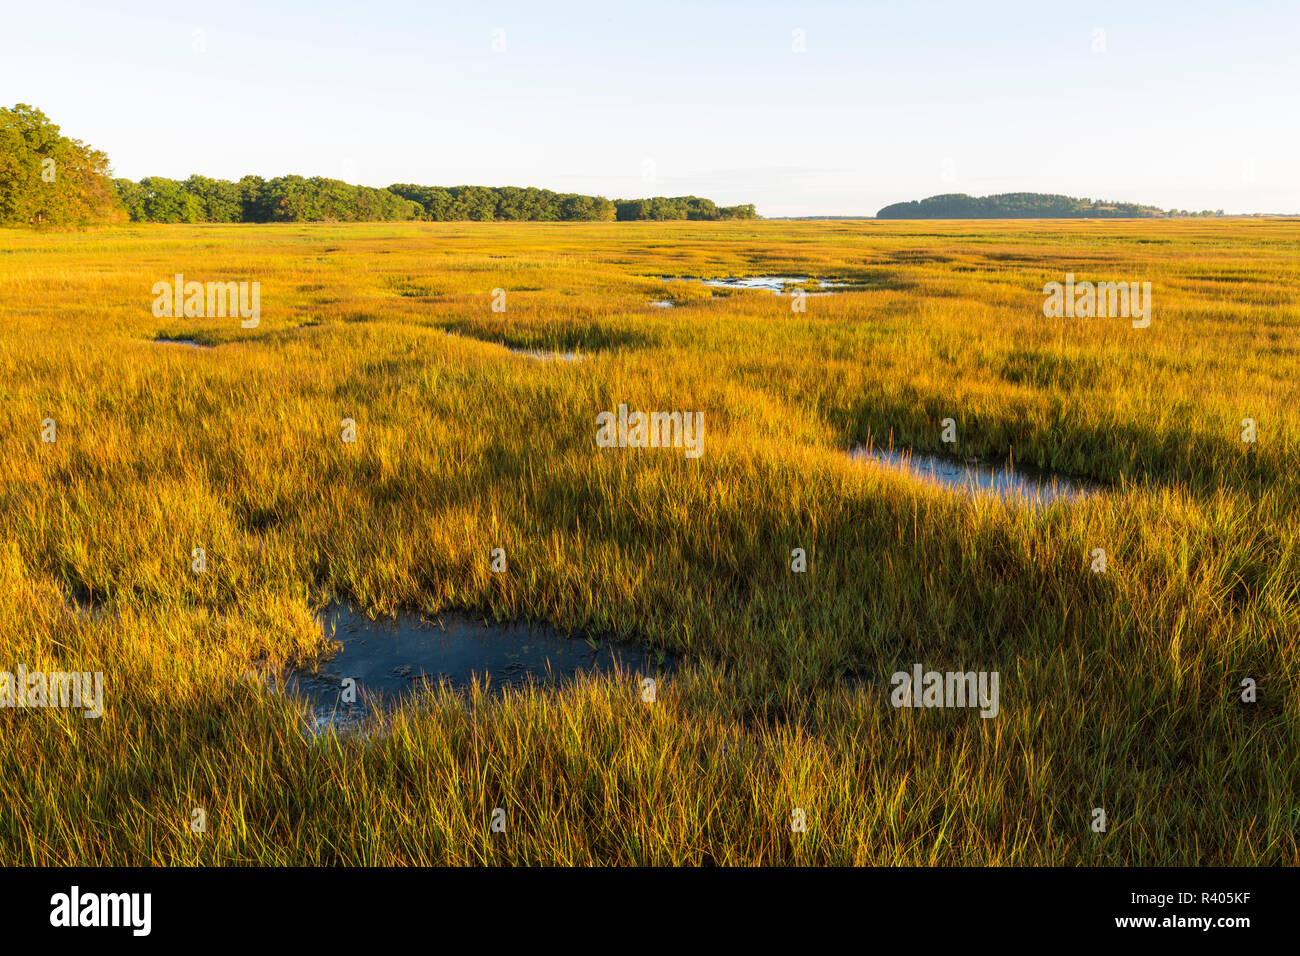 Essex River salt marsh à la Cox avec réservation gratuite dans l'Essex, Massachusetts. Banque D'Images